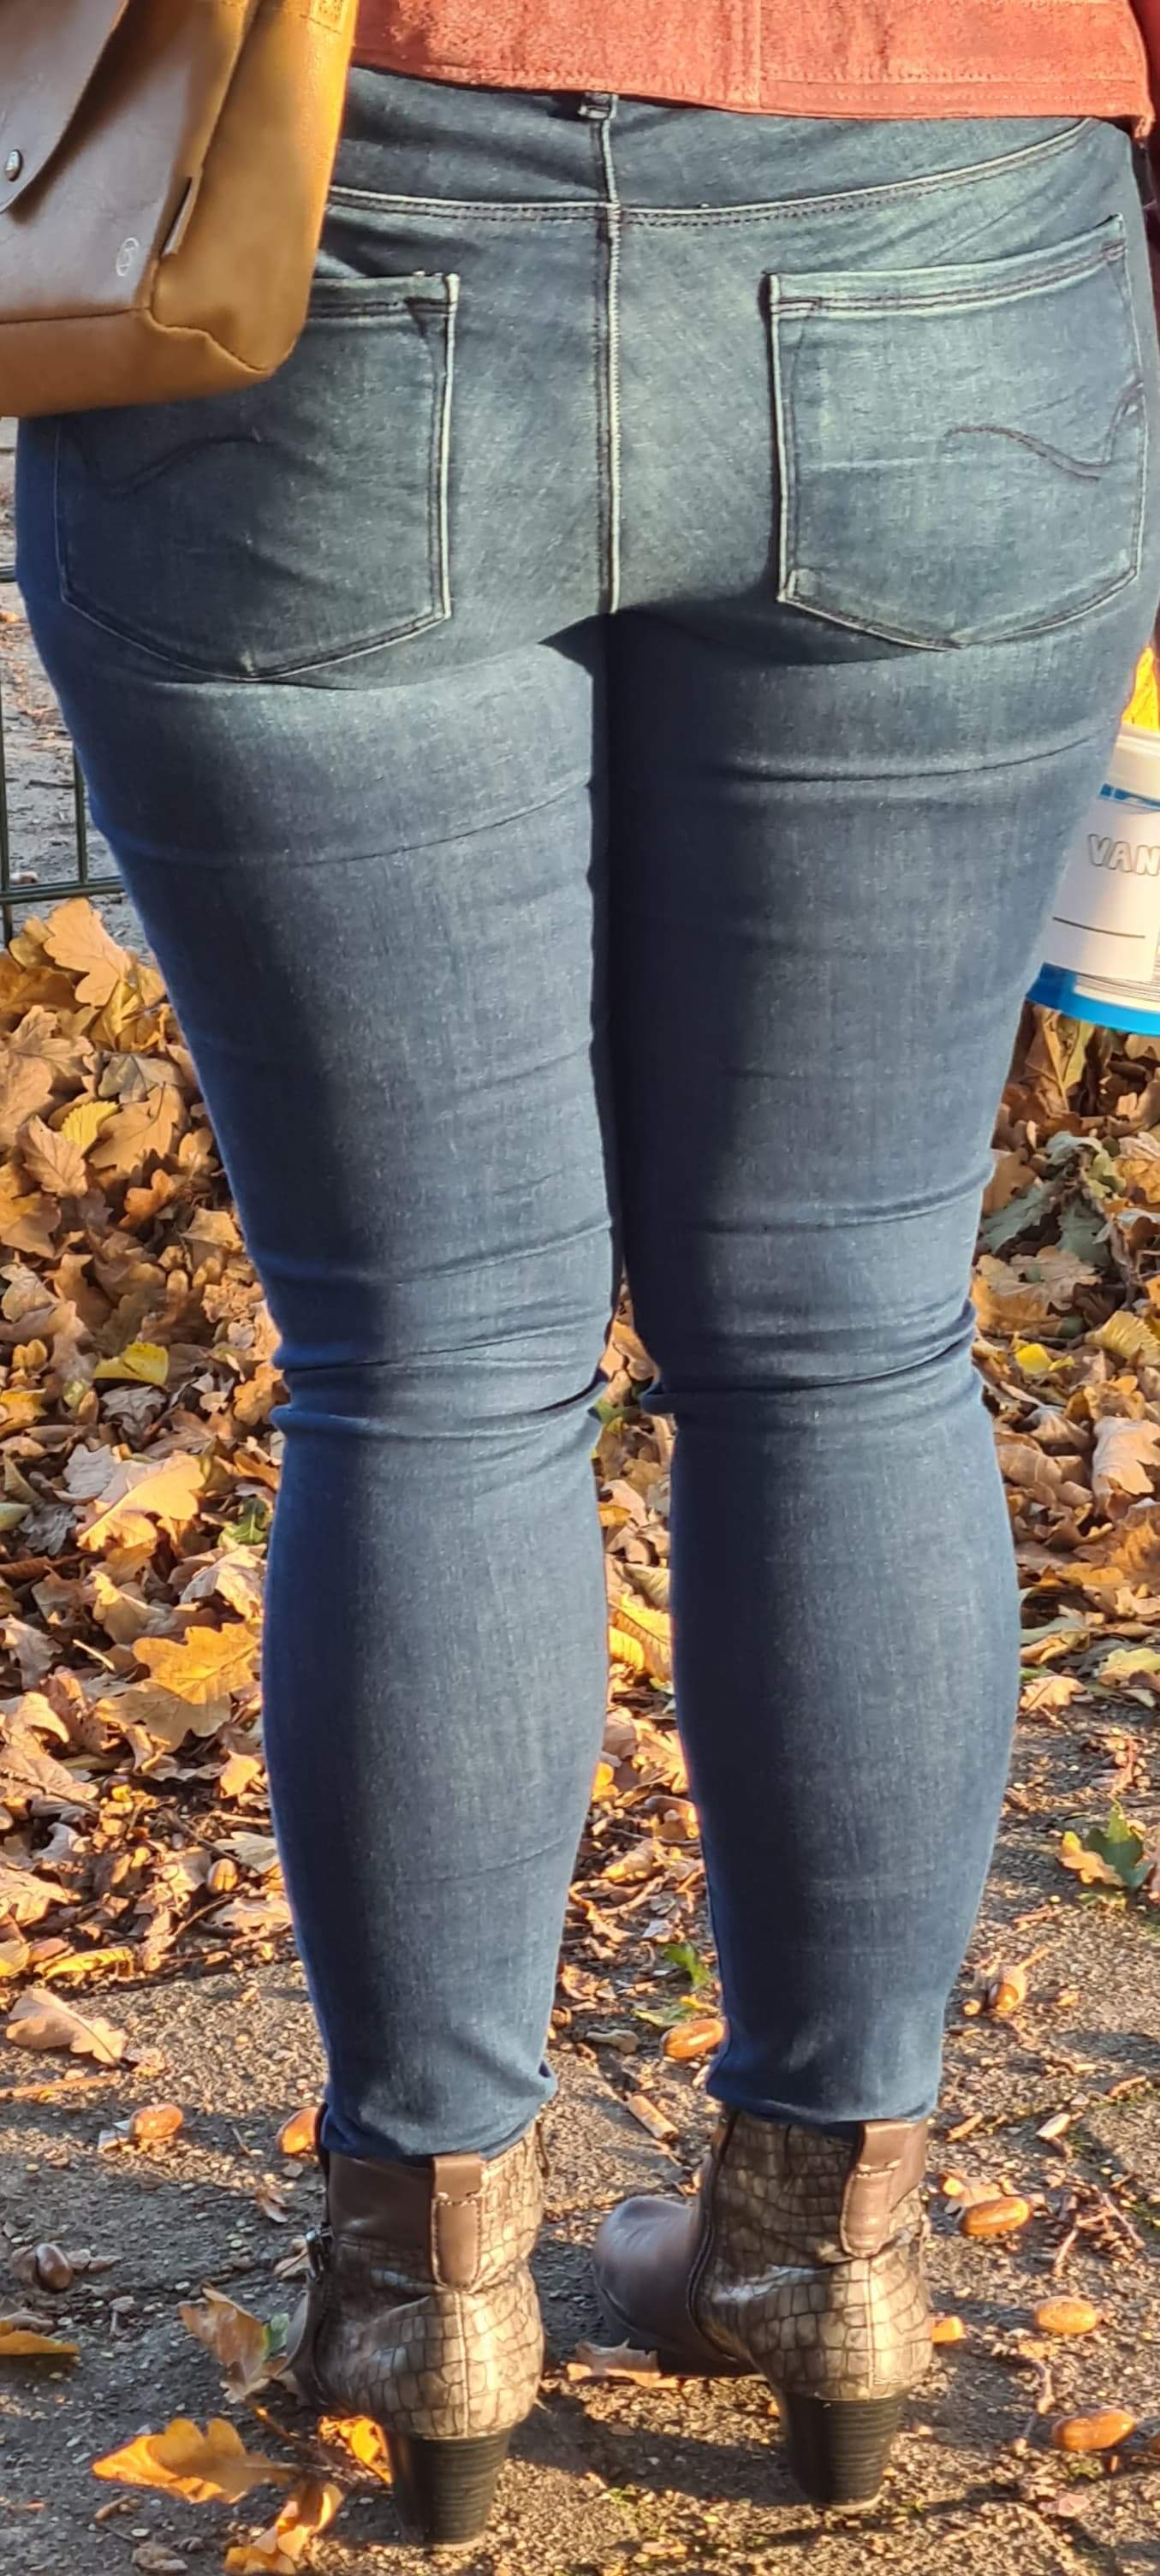 Autumn ass - Tight Jeans - Forum